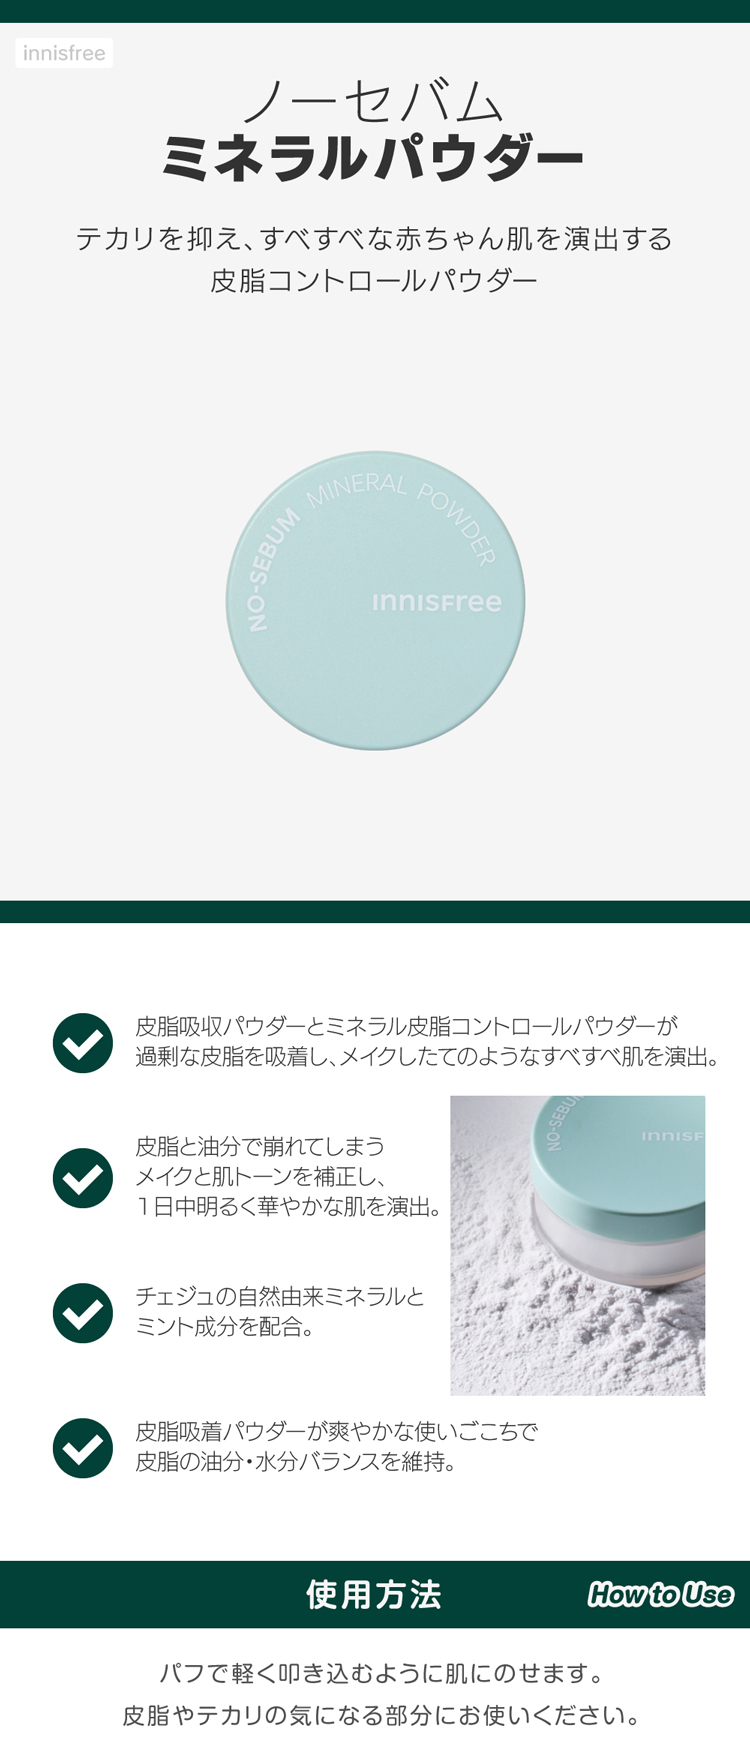 イニスフリー innisfree ノーセバムミネラルパウダー (白粉パウダー、5g) 韓国コスメ 韓国化粧品 韓国広場e-shop本店